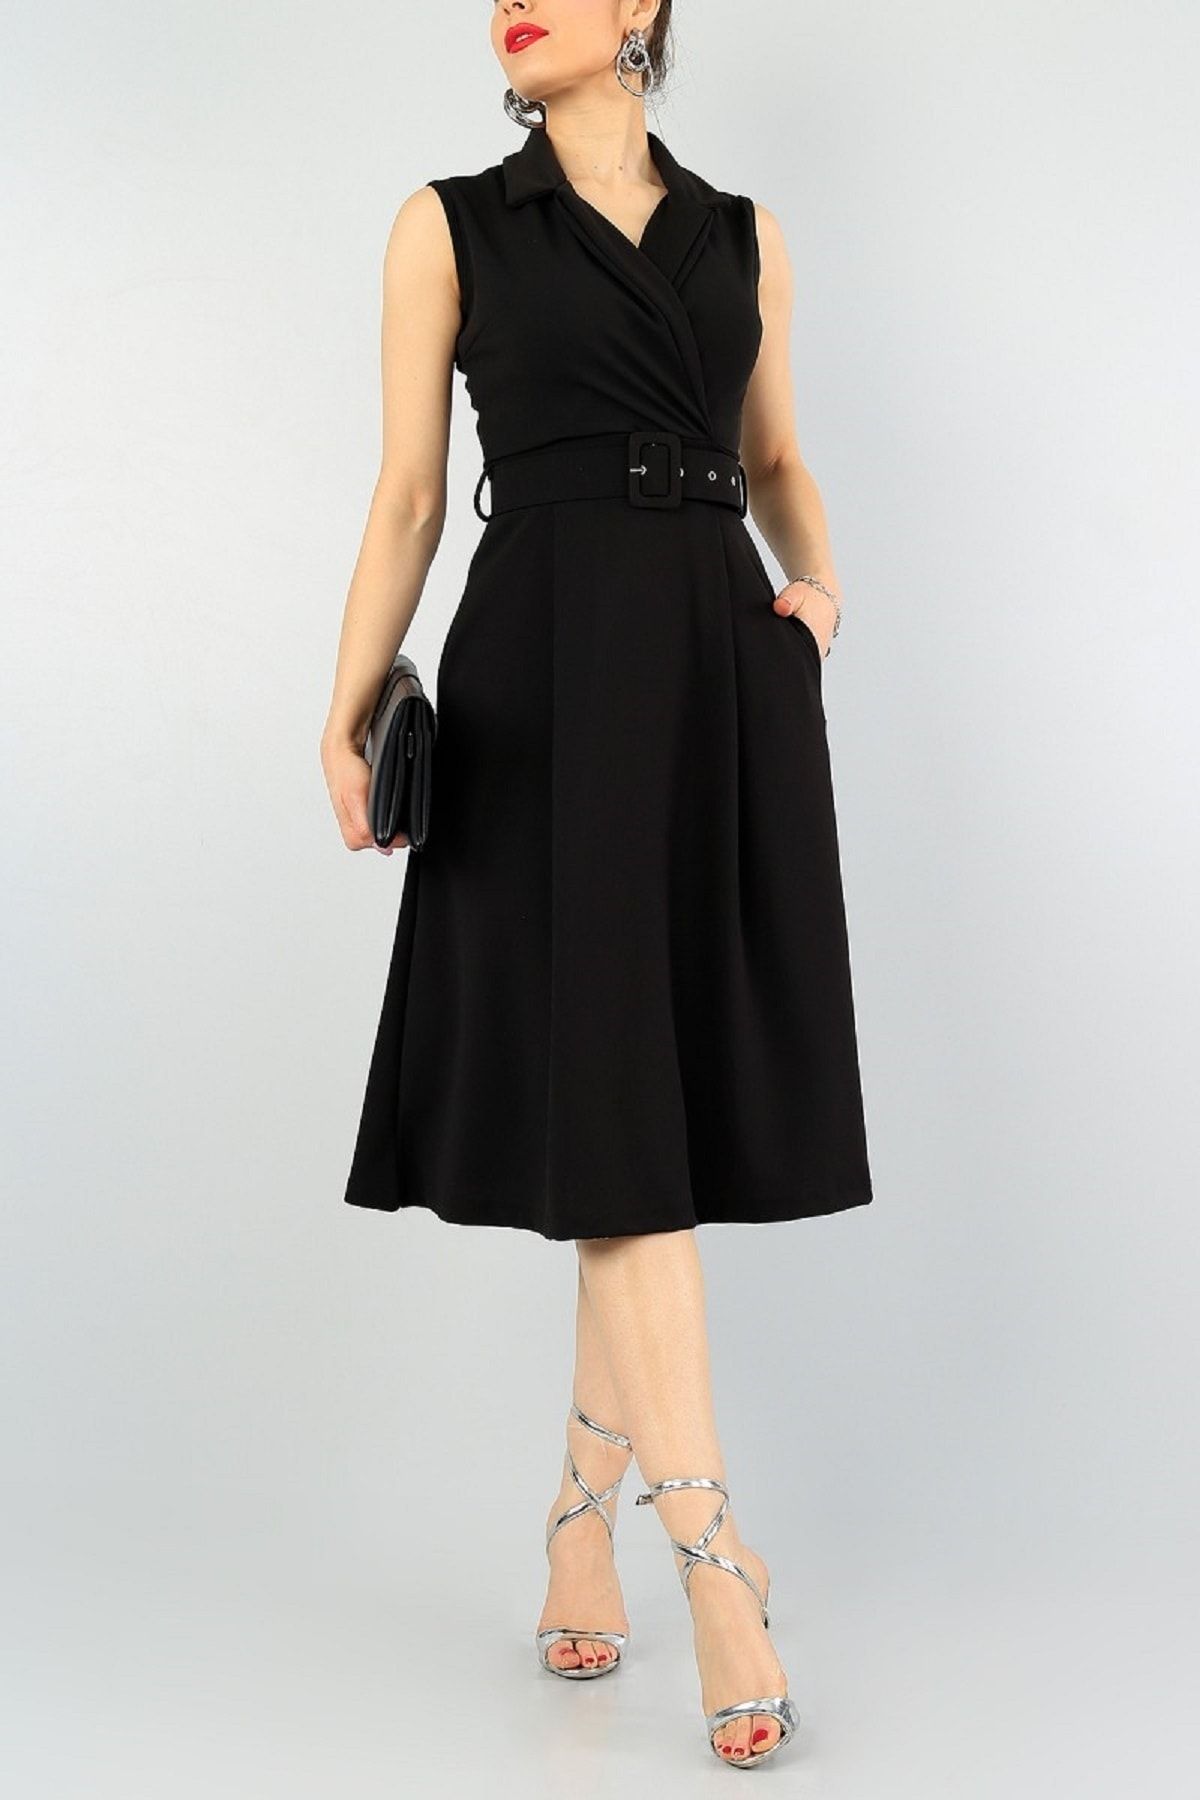 bayansepeti Kadın Siyah Esnek Kumaş Kruvaze Yaka Kemer Detaylı Pileli Dizaltı Elbise 59434